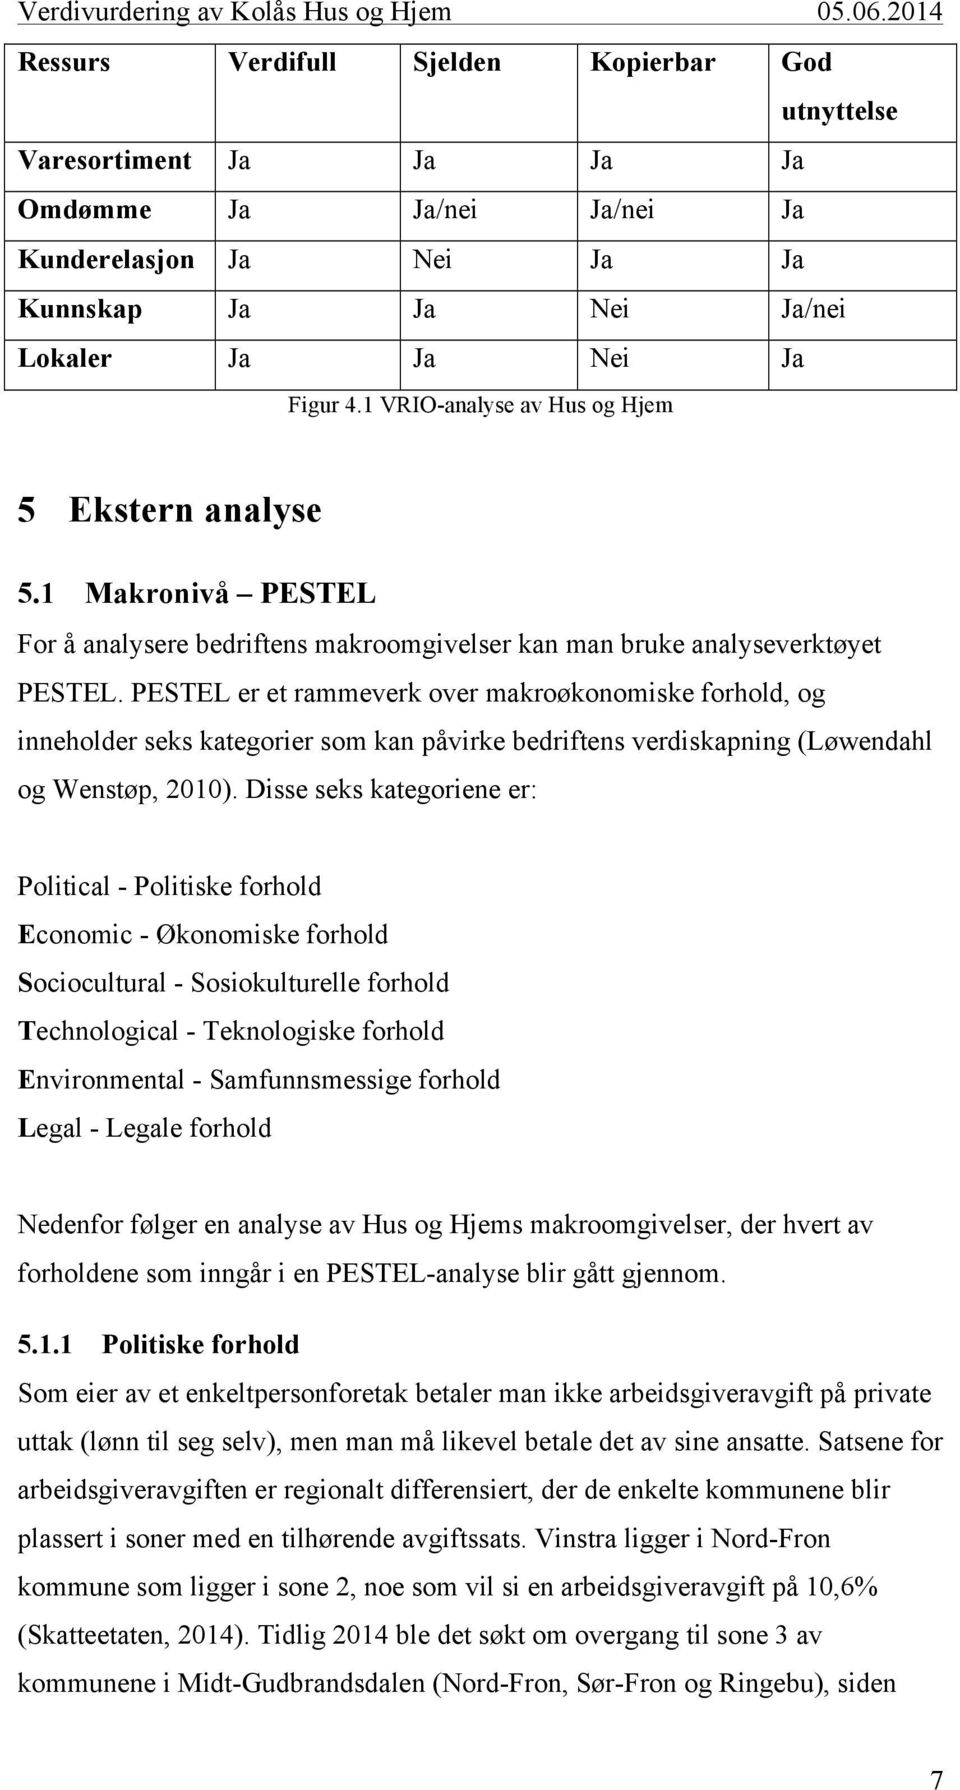 PESTEL er et rammeverk over makroøkonomiske forhold, og inneholder seks kategorier som kan påvirke bedriftens verdiskapning (Løwendahl og Wenstøp, 2010).